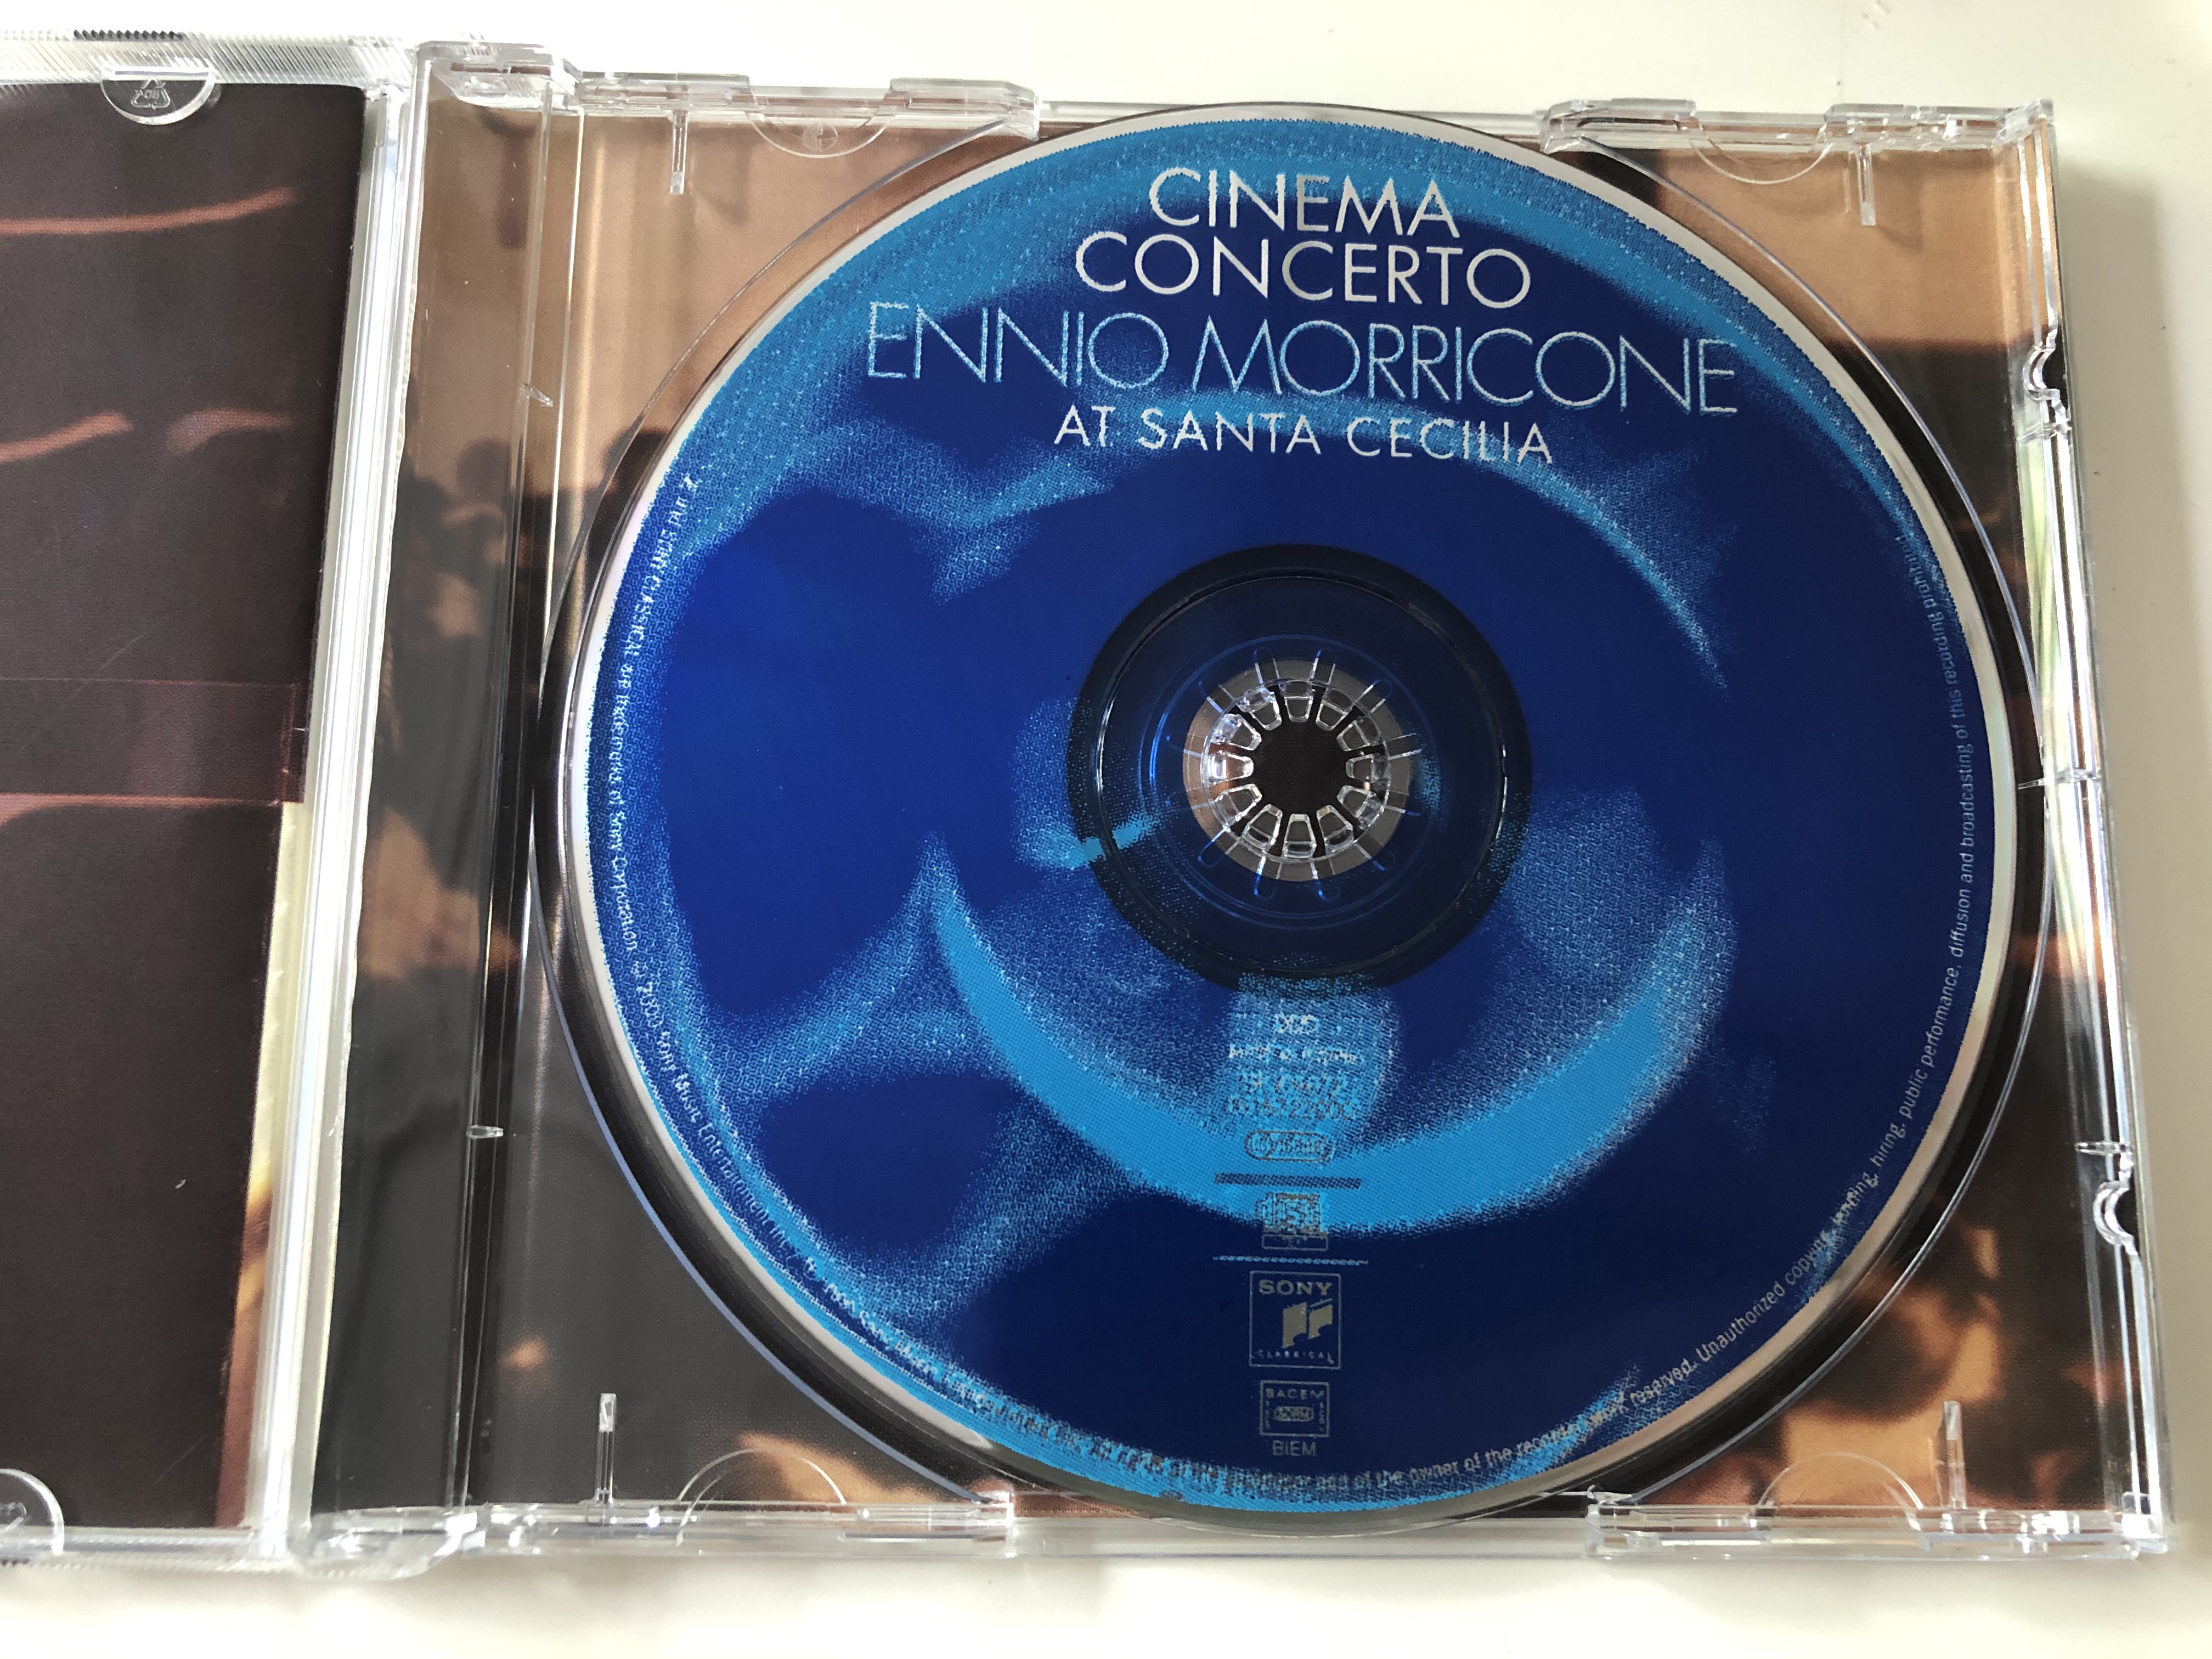 cinema-concerto-ennio-morricone-at-santa-cecilia-orchestra-and-chorus-of-the-accademia-nazionale-di-santa-cecilia-sony-classical-audio-cd-1999-sk-61672-4-.jpg